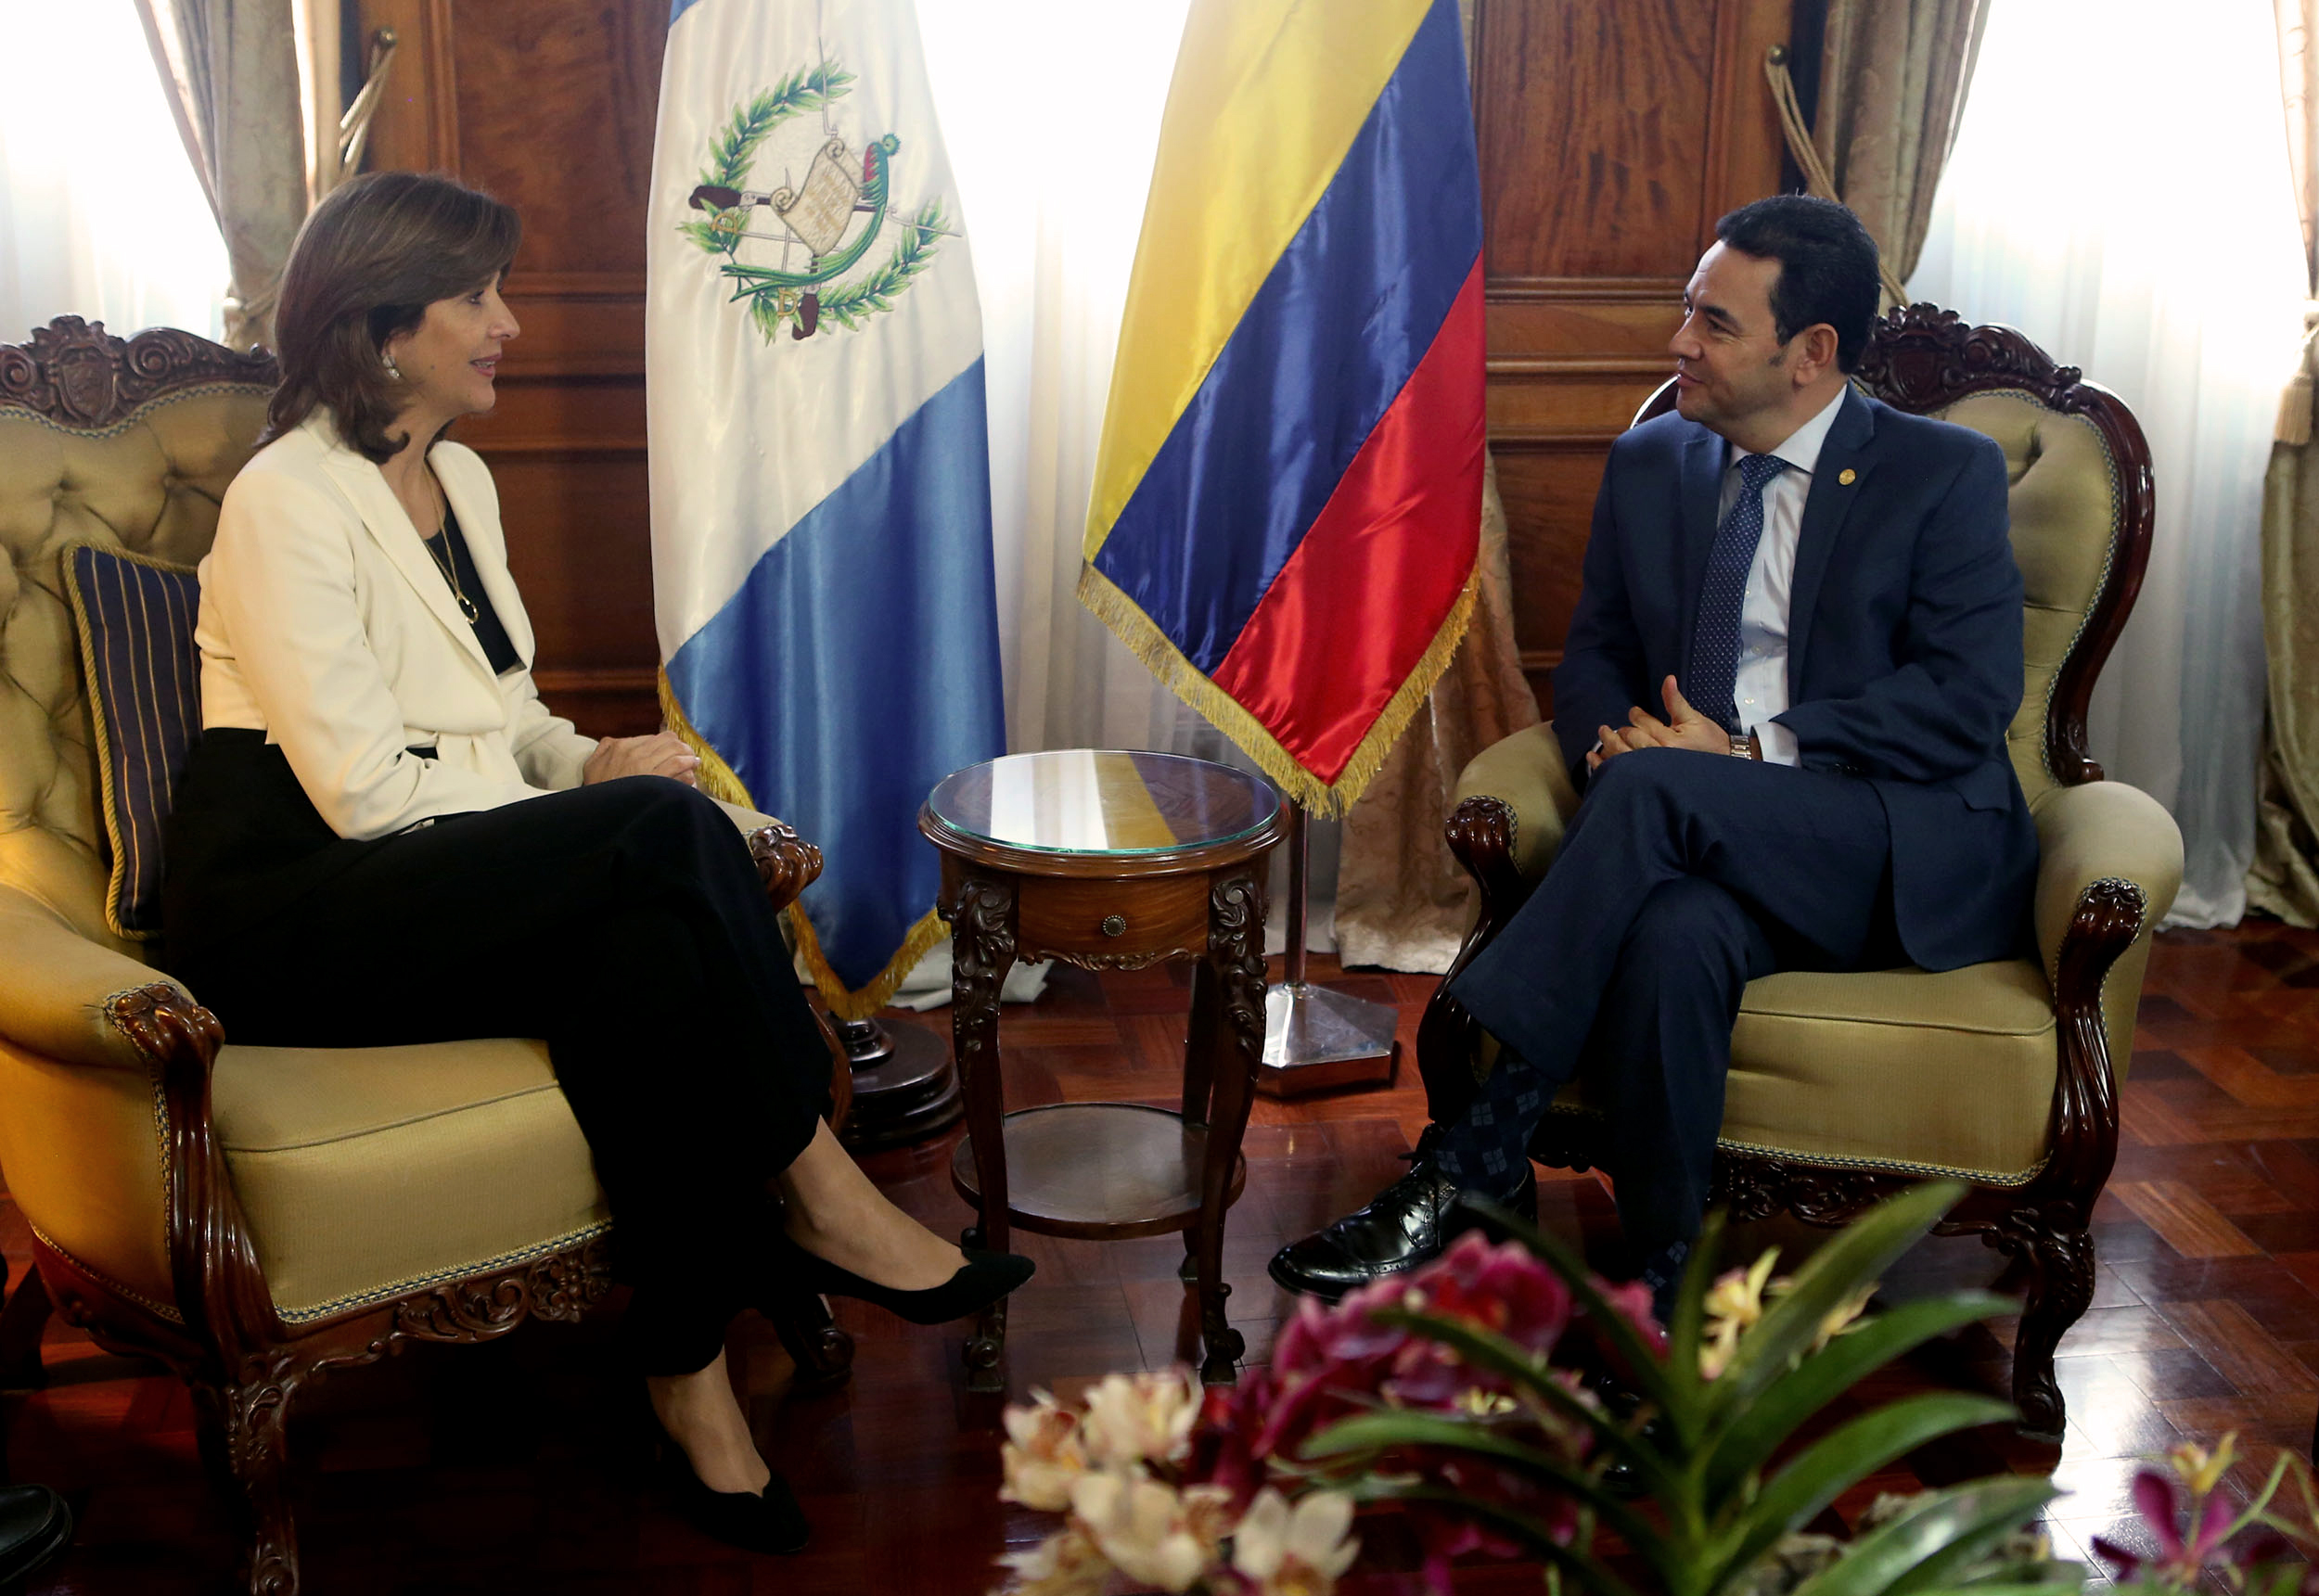 En el Palacio de Gobierno de Guatemala, el Presidente Jimmy Morales Cabrera y el Ministro de Relaciones Exteriores, Carlos Raúl Morales, se reunieron con la Ministra de Relaciones Exteriores de Colombia, María Ángela Holguín.